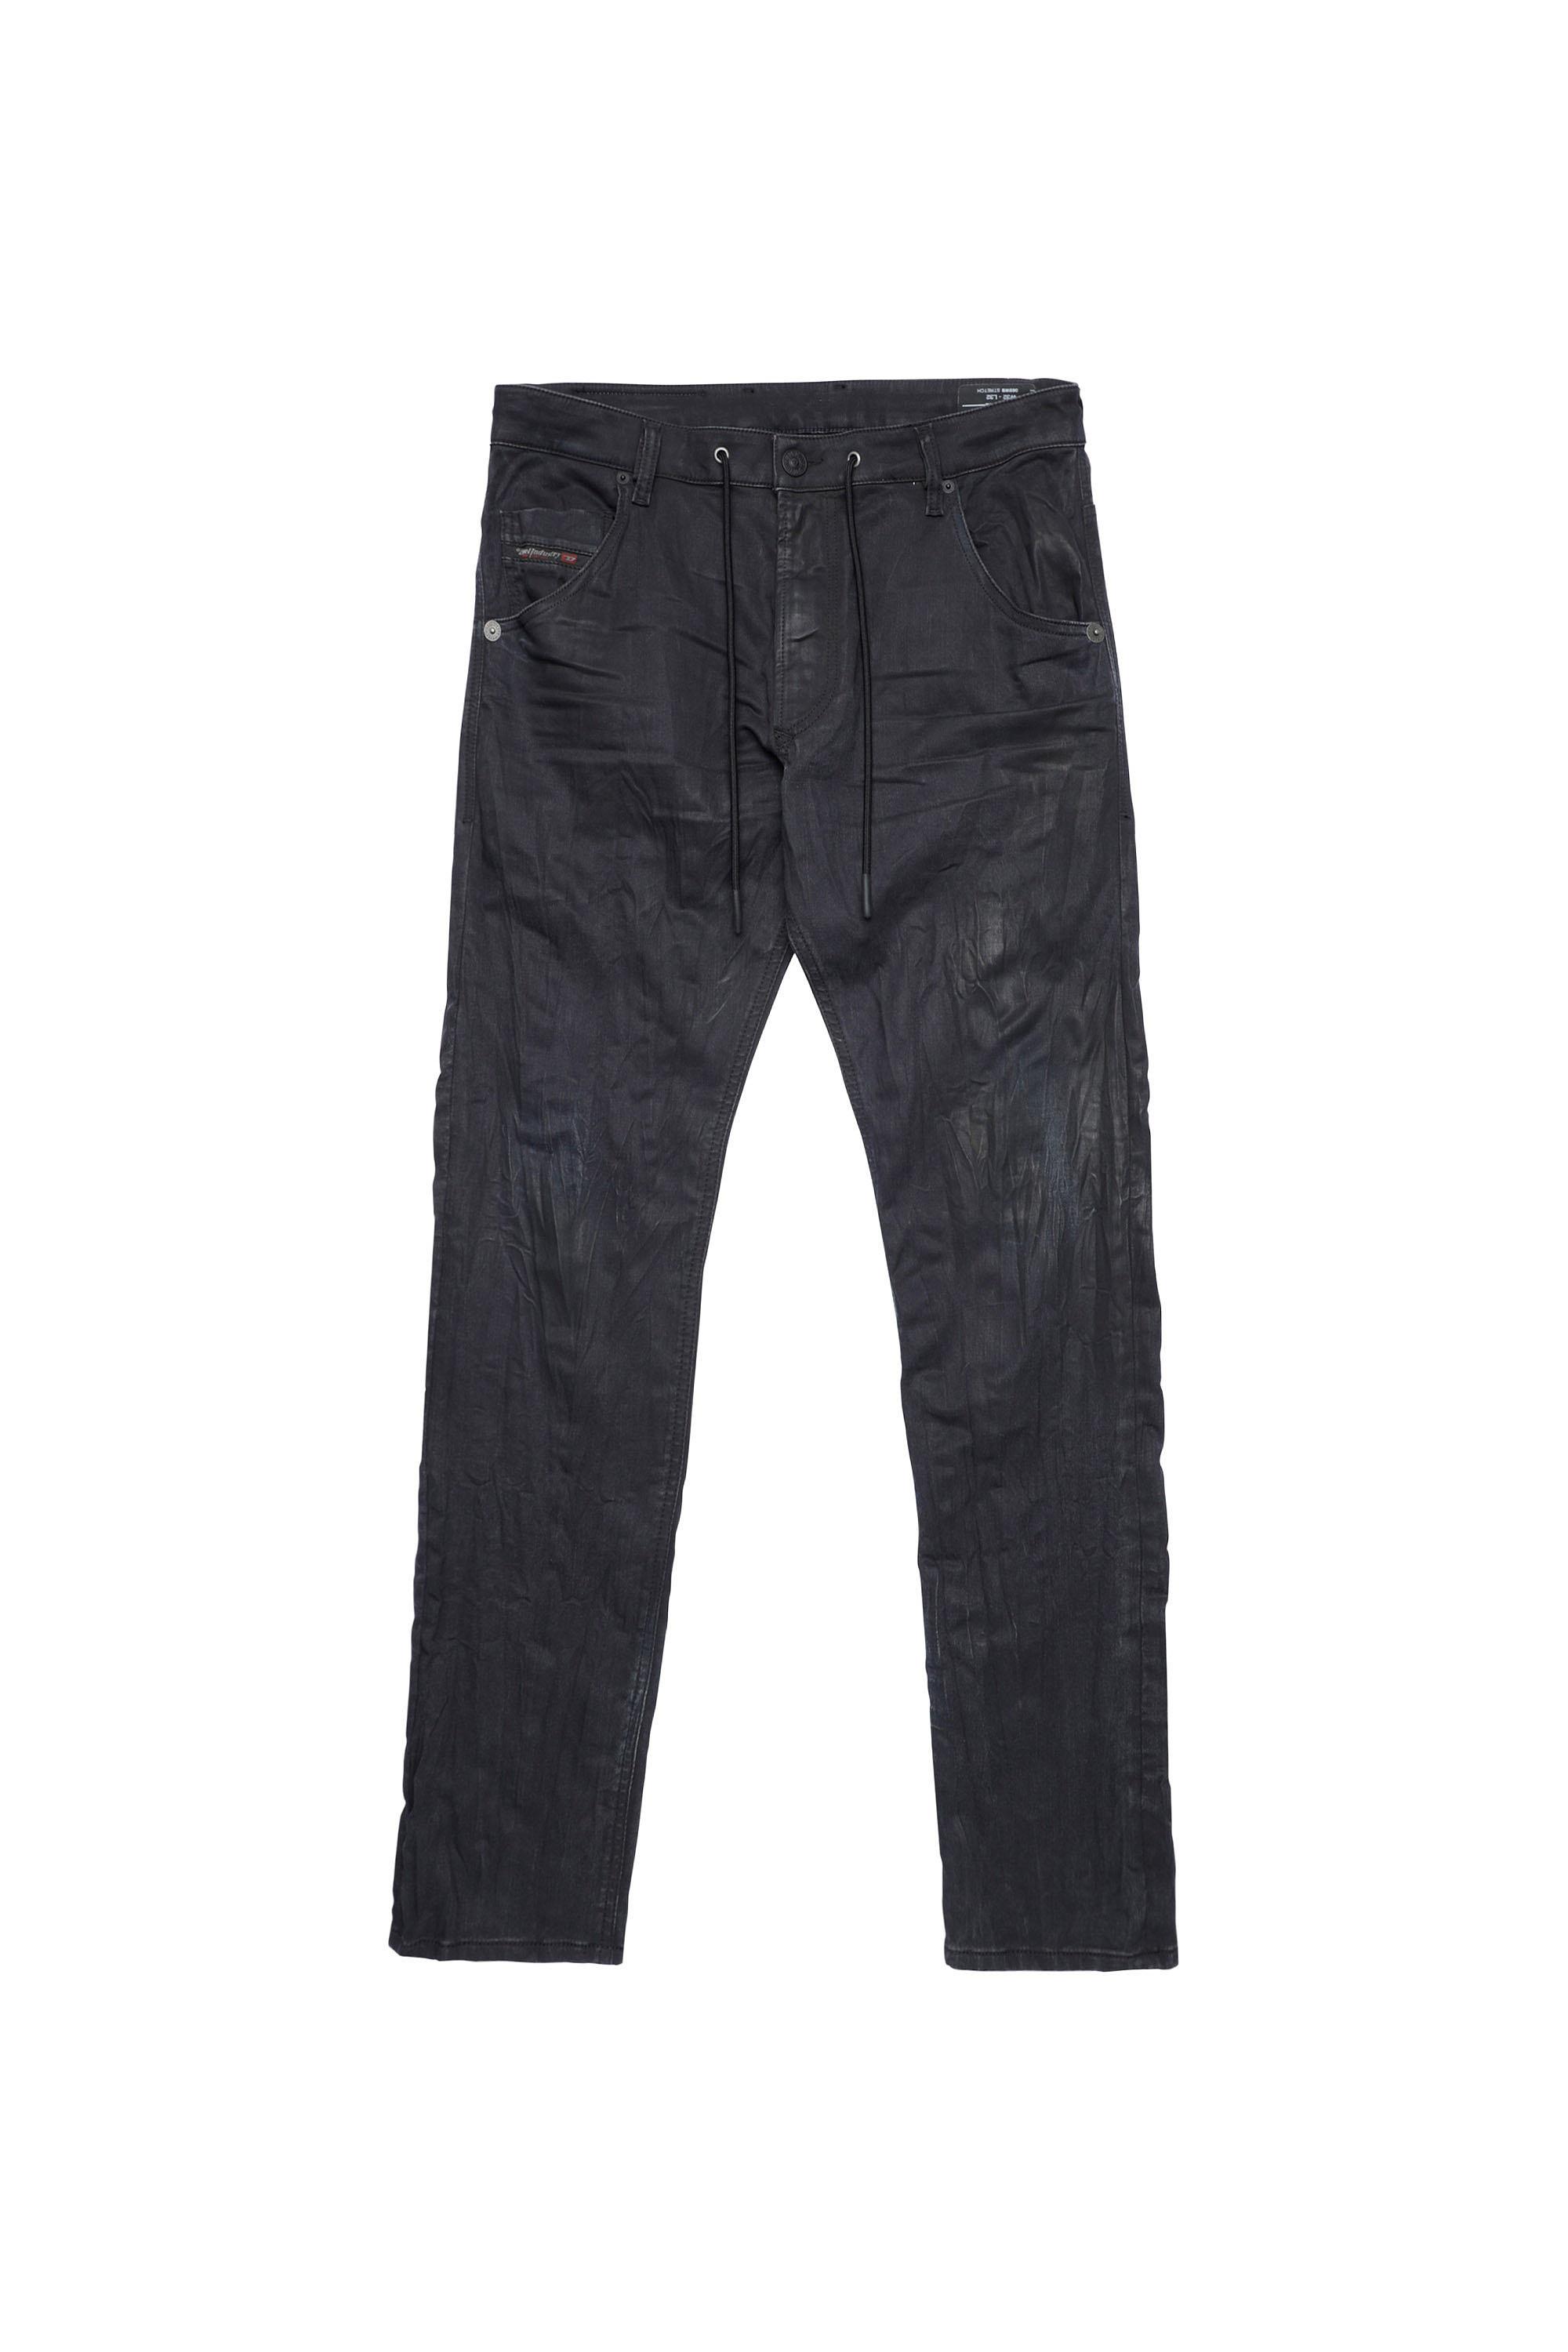 Diesel - Krooley Tapered JoggJeans® 069WB, Black/Dark grey - Image 2